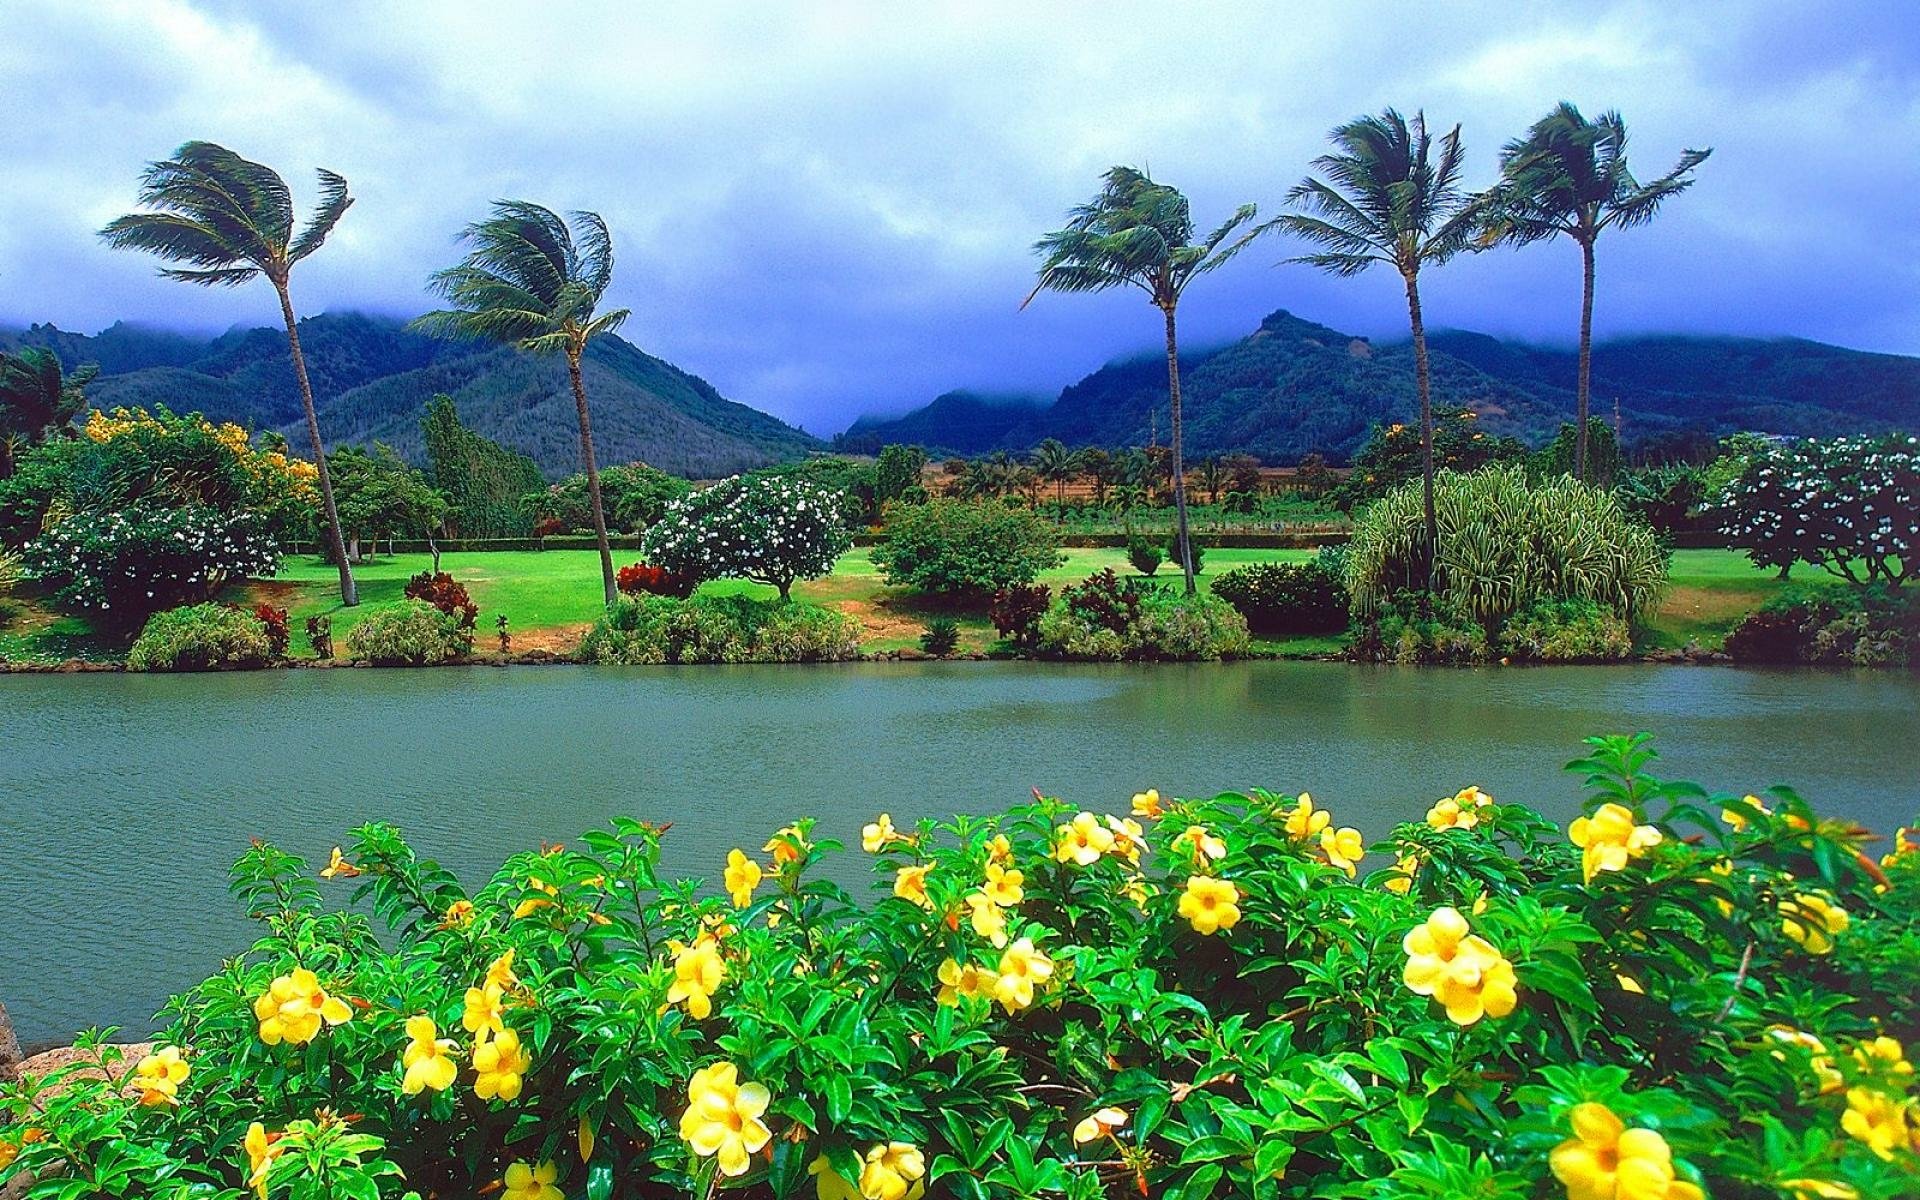 夏威夷椰子图片_夏威夷椰子的叶子图片大全 - 花卉网